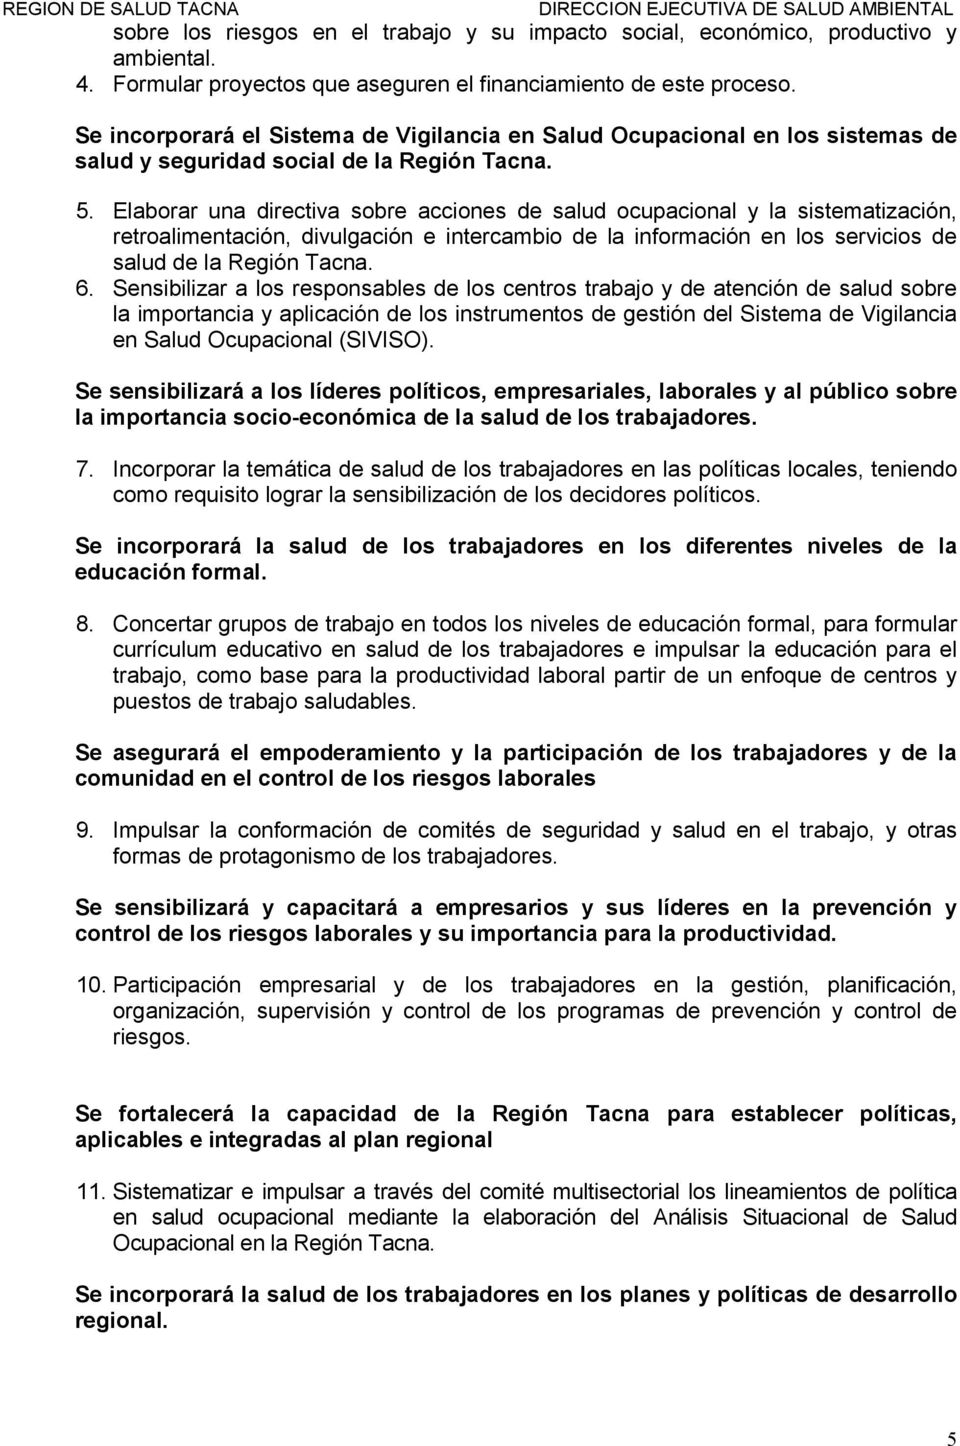 Elabrar una directiva sbre accines de salud cupacinal y la sistematización, retralimentación, divulgación e intercambi de la infrmación en ls servicis de salud de la Región Tacna. 6.